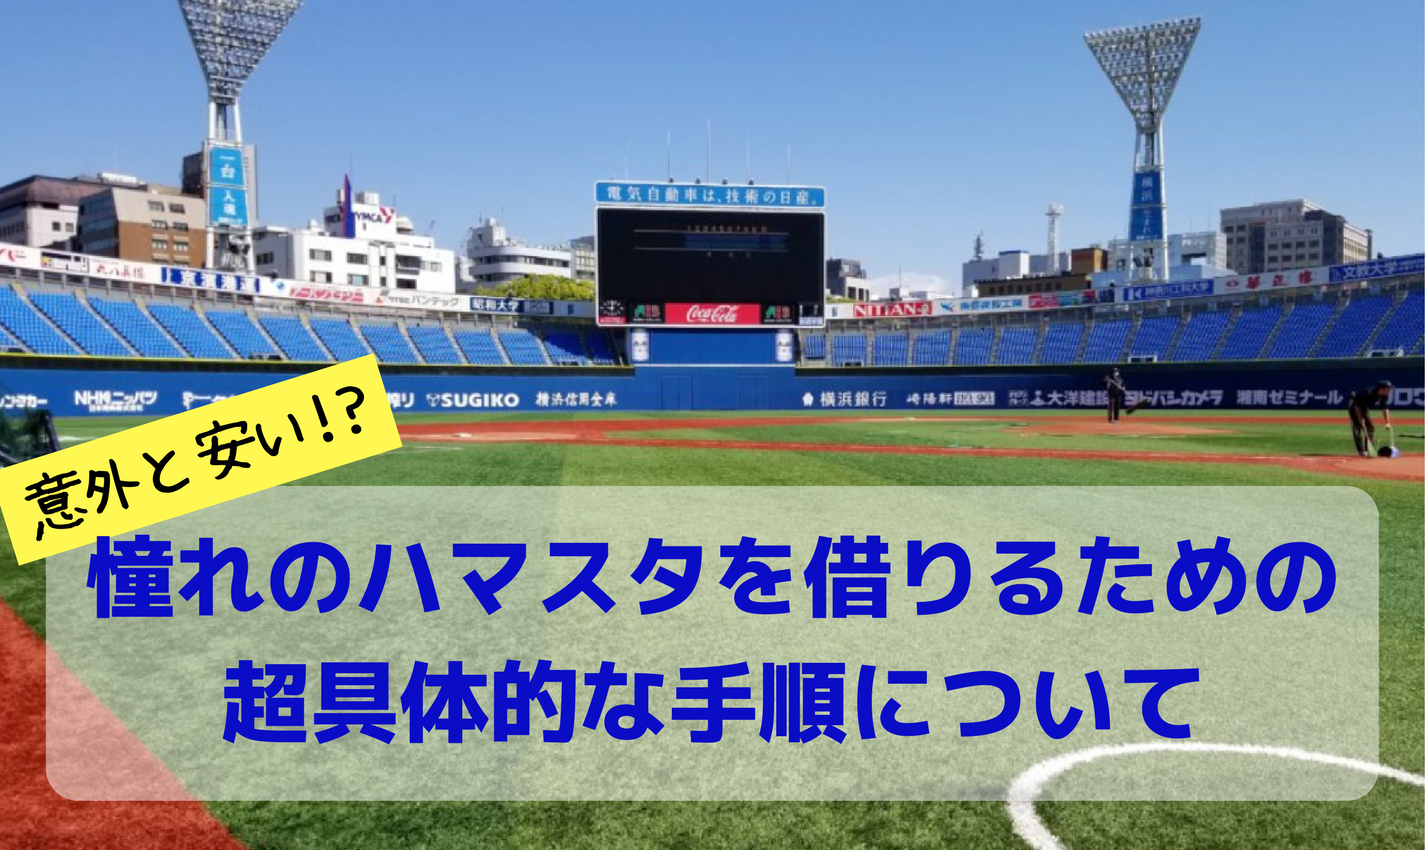 横浜スタジアムを借りるための超具体的な手順 レンタル 貸し切り Yutakas Japan ユタカス ジャパン